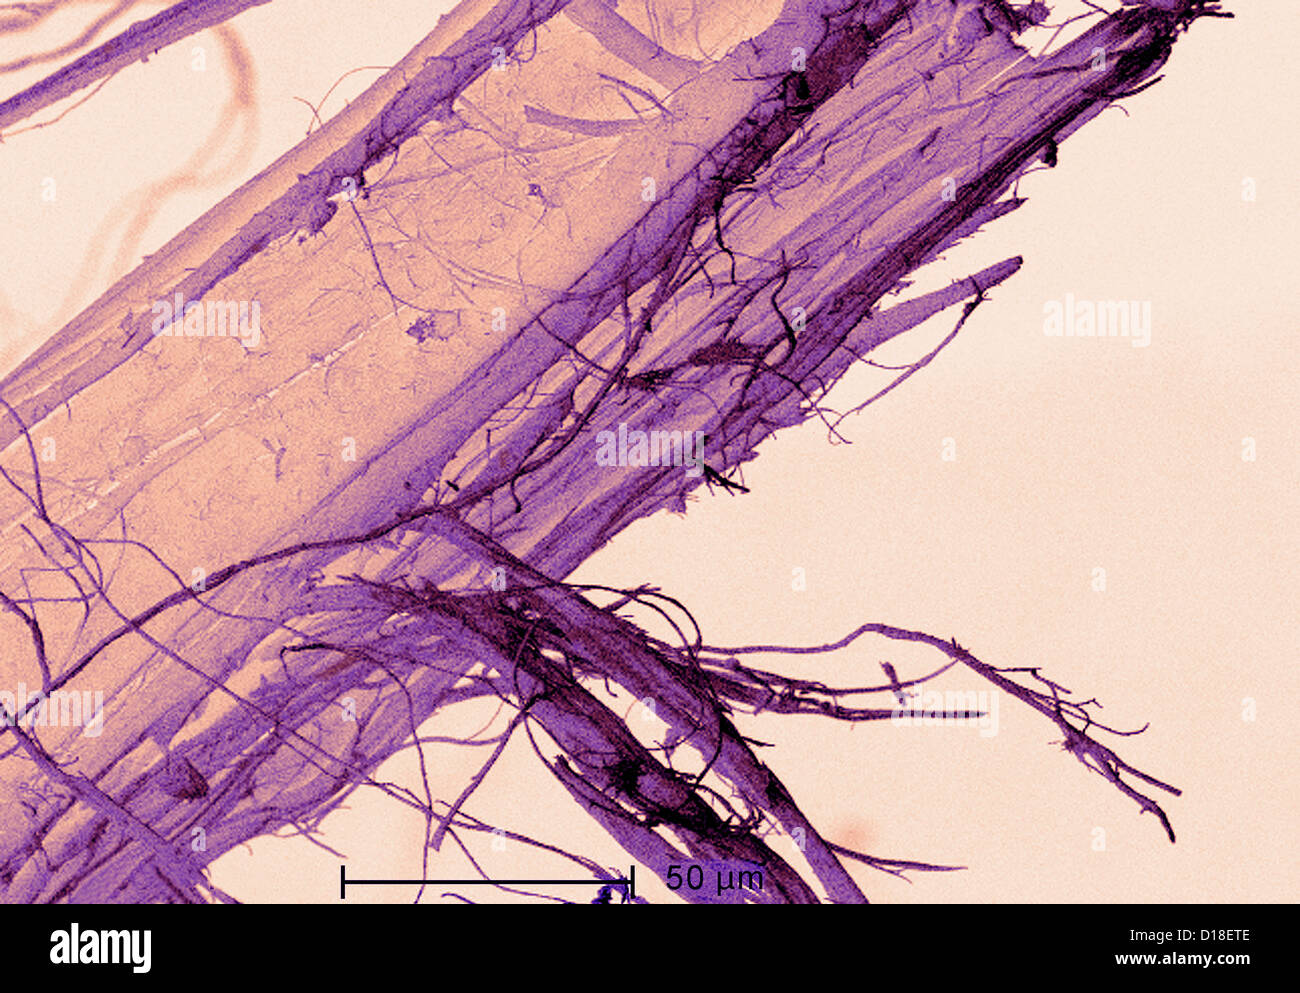 Micrografía electrónica de amianto Foto de stock